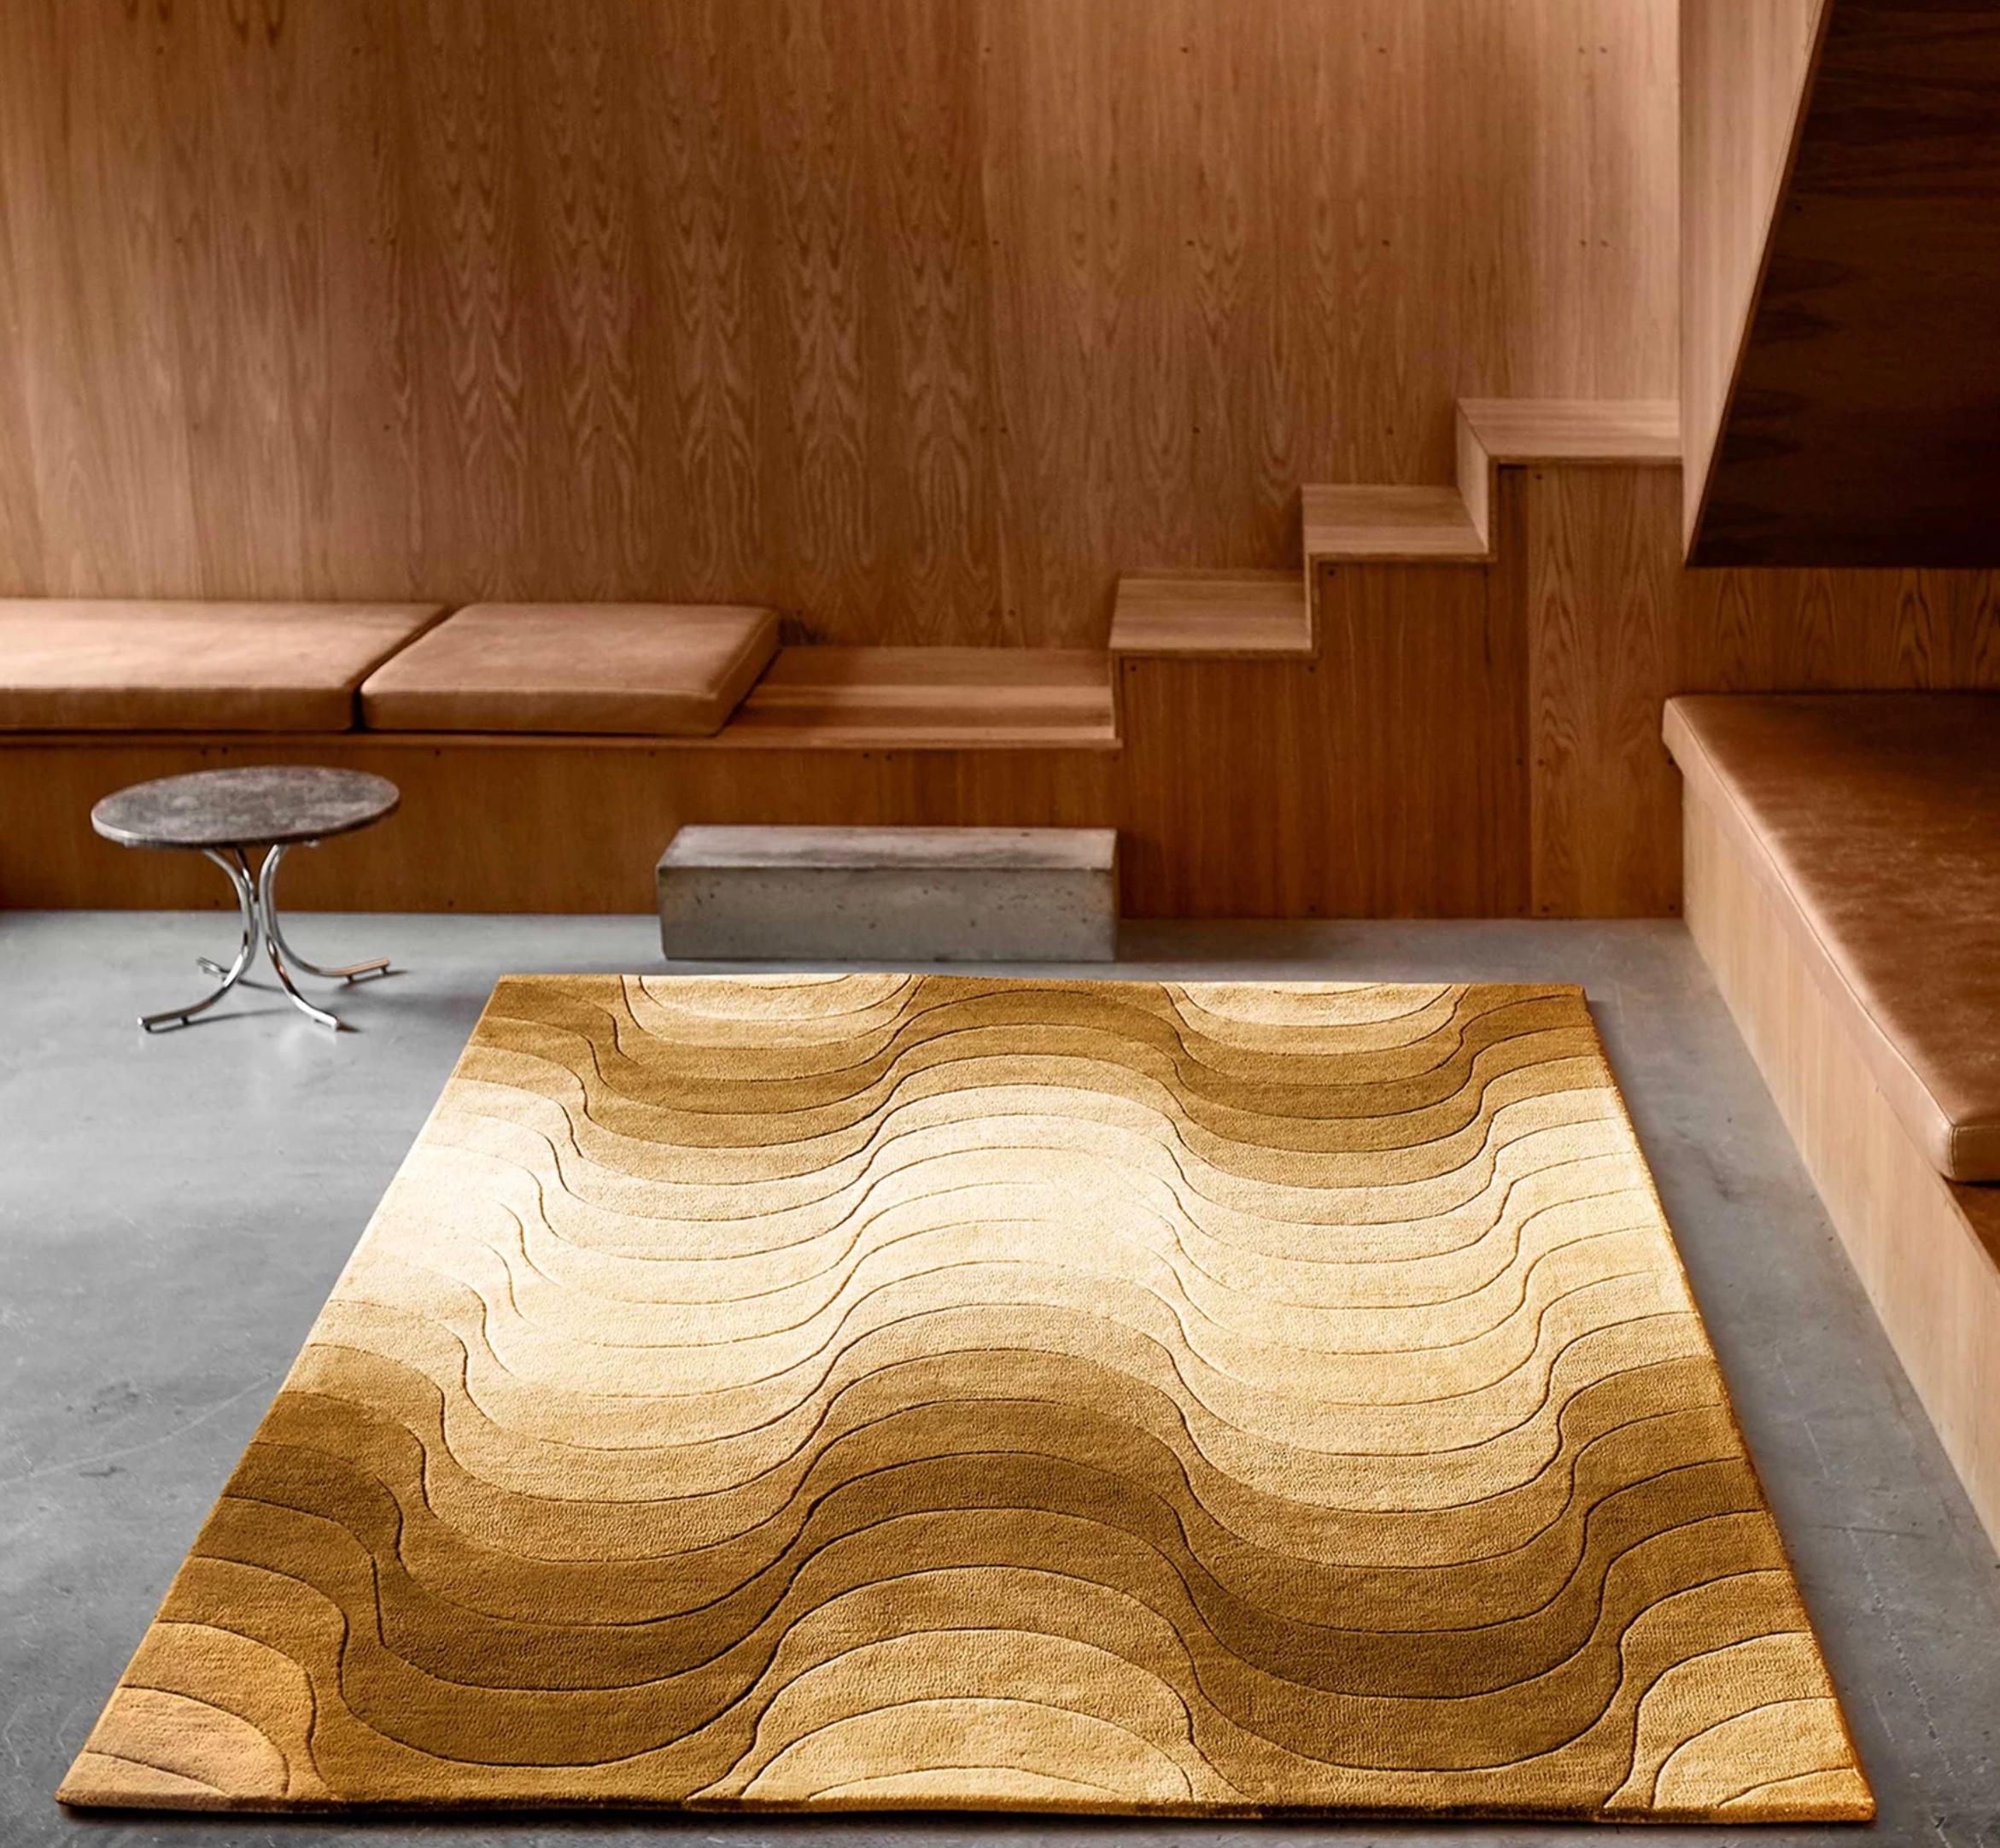 Verner Panton 'Wave' Teppich 240 x 170cm für Verpan. Aktuelle Produktion.

Teppiche verleihen einem Raum nicht nur eine skulpturale Note, sondern dienen auch dazu, die Dimensionen des Raums zu betonen und/oder zu verändern. Alle Verpan-Teppiche